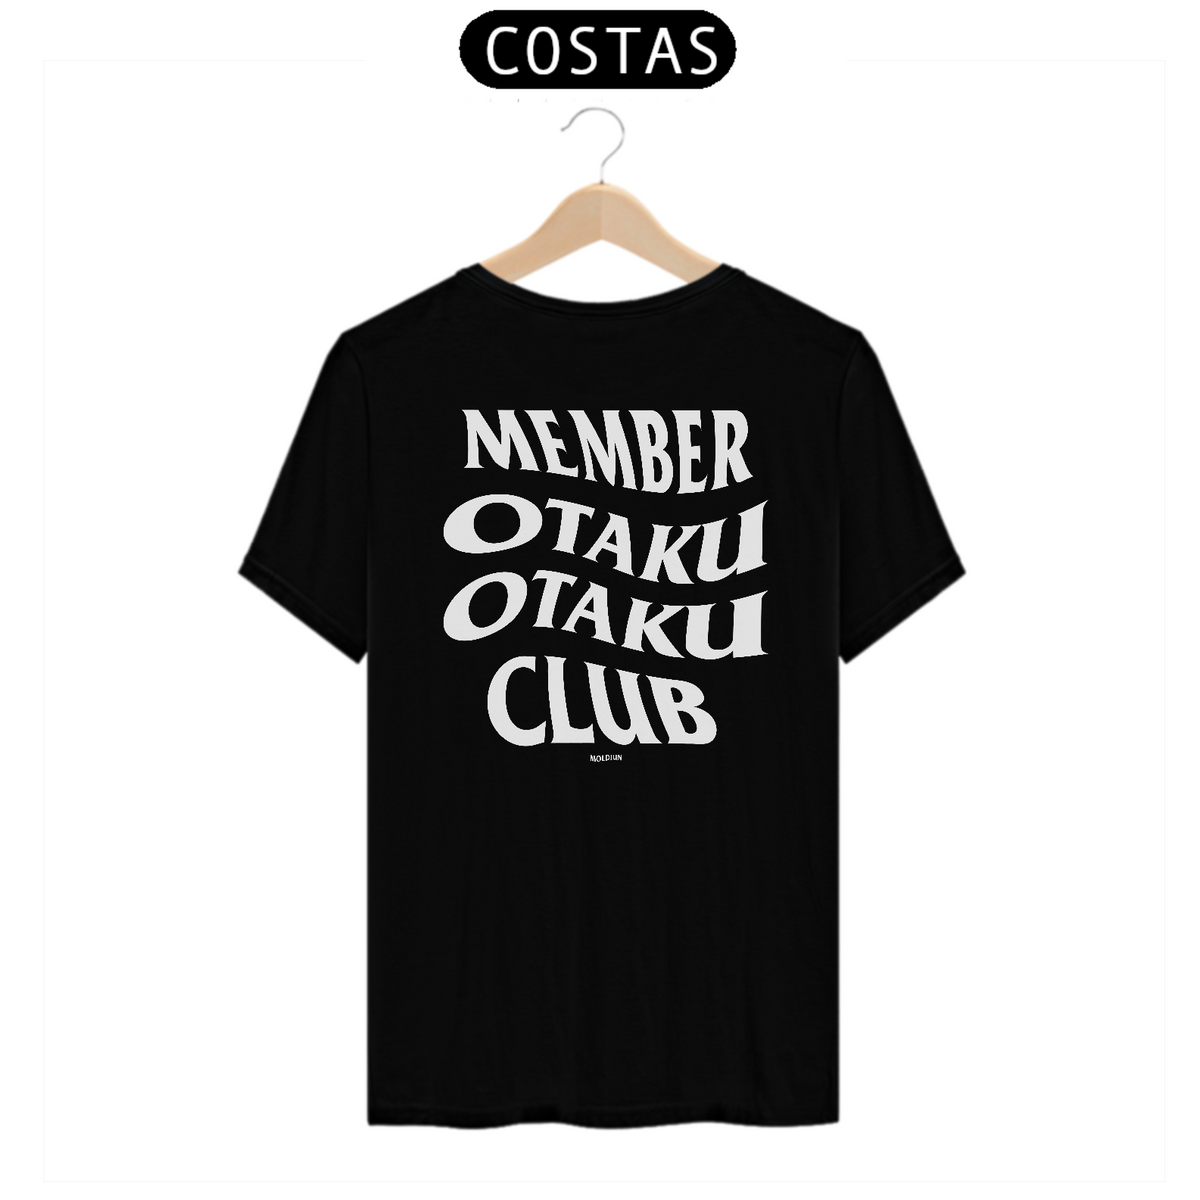 Nome do produto: Member Otaku Club (costas)